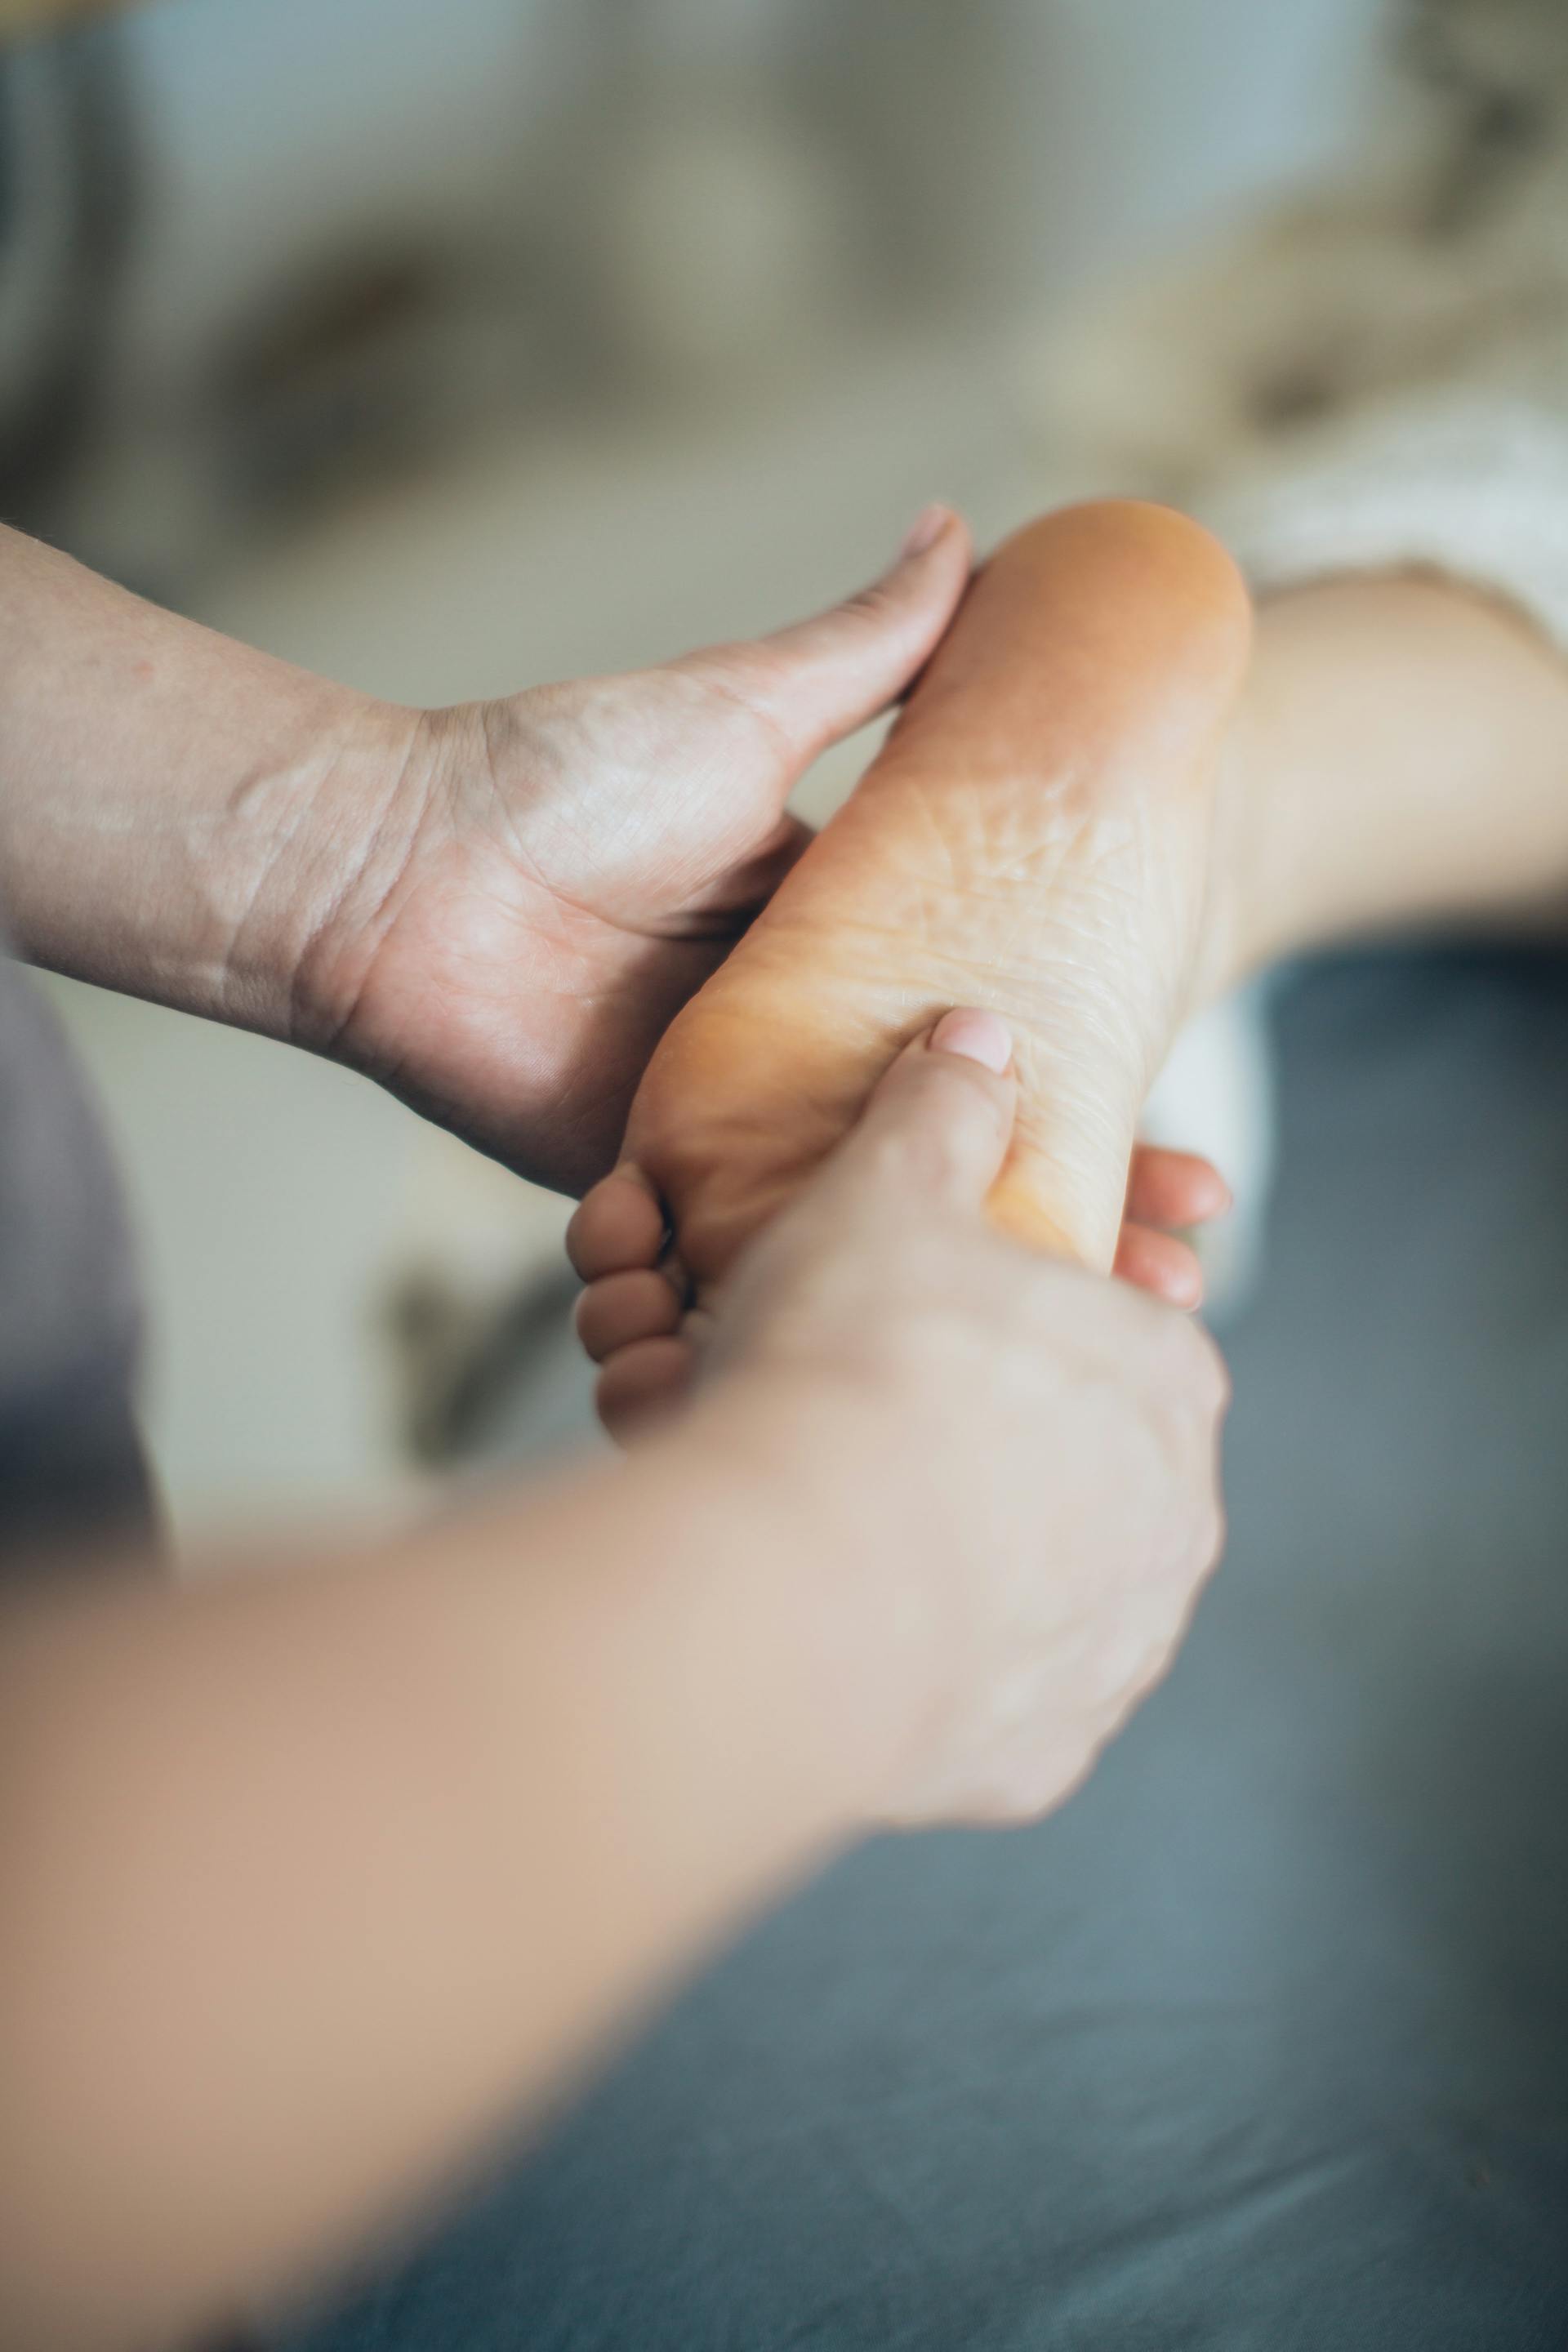 Una persona recibiendo un masaje en los pies | Fuente: Pexels